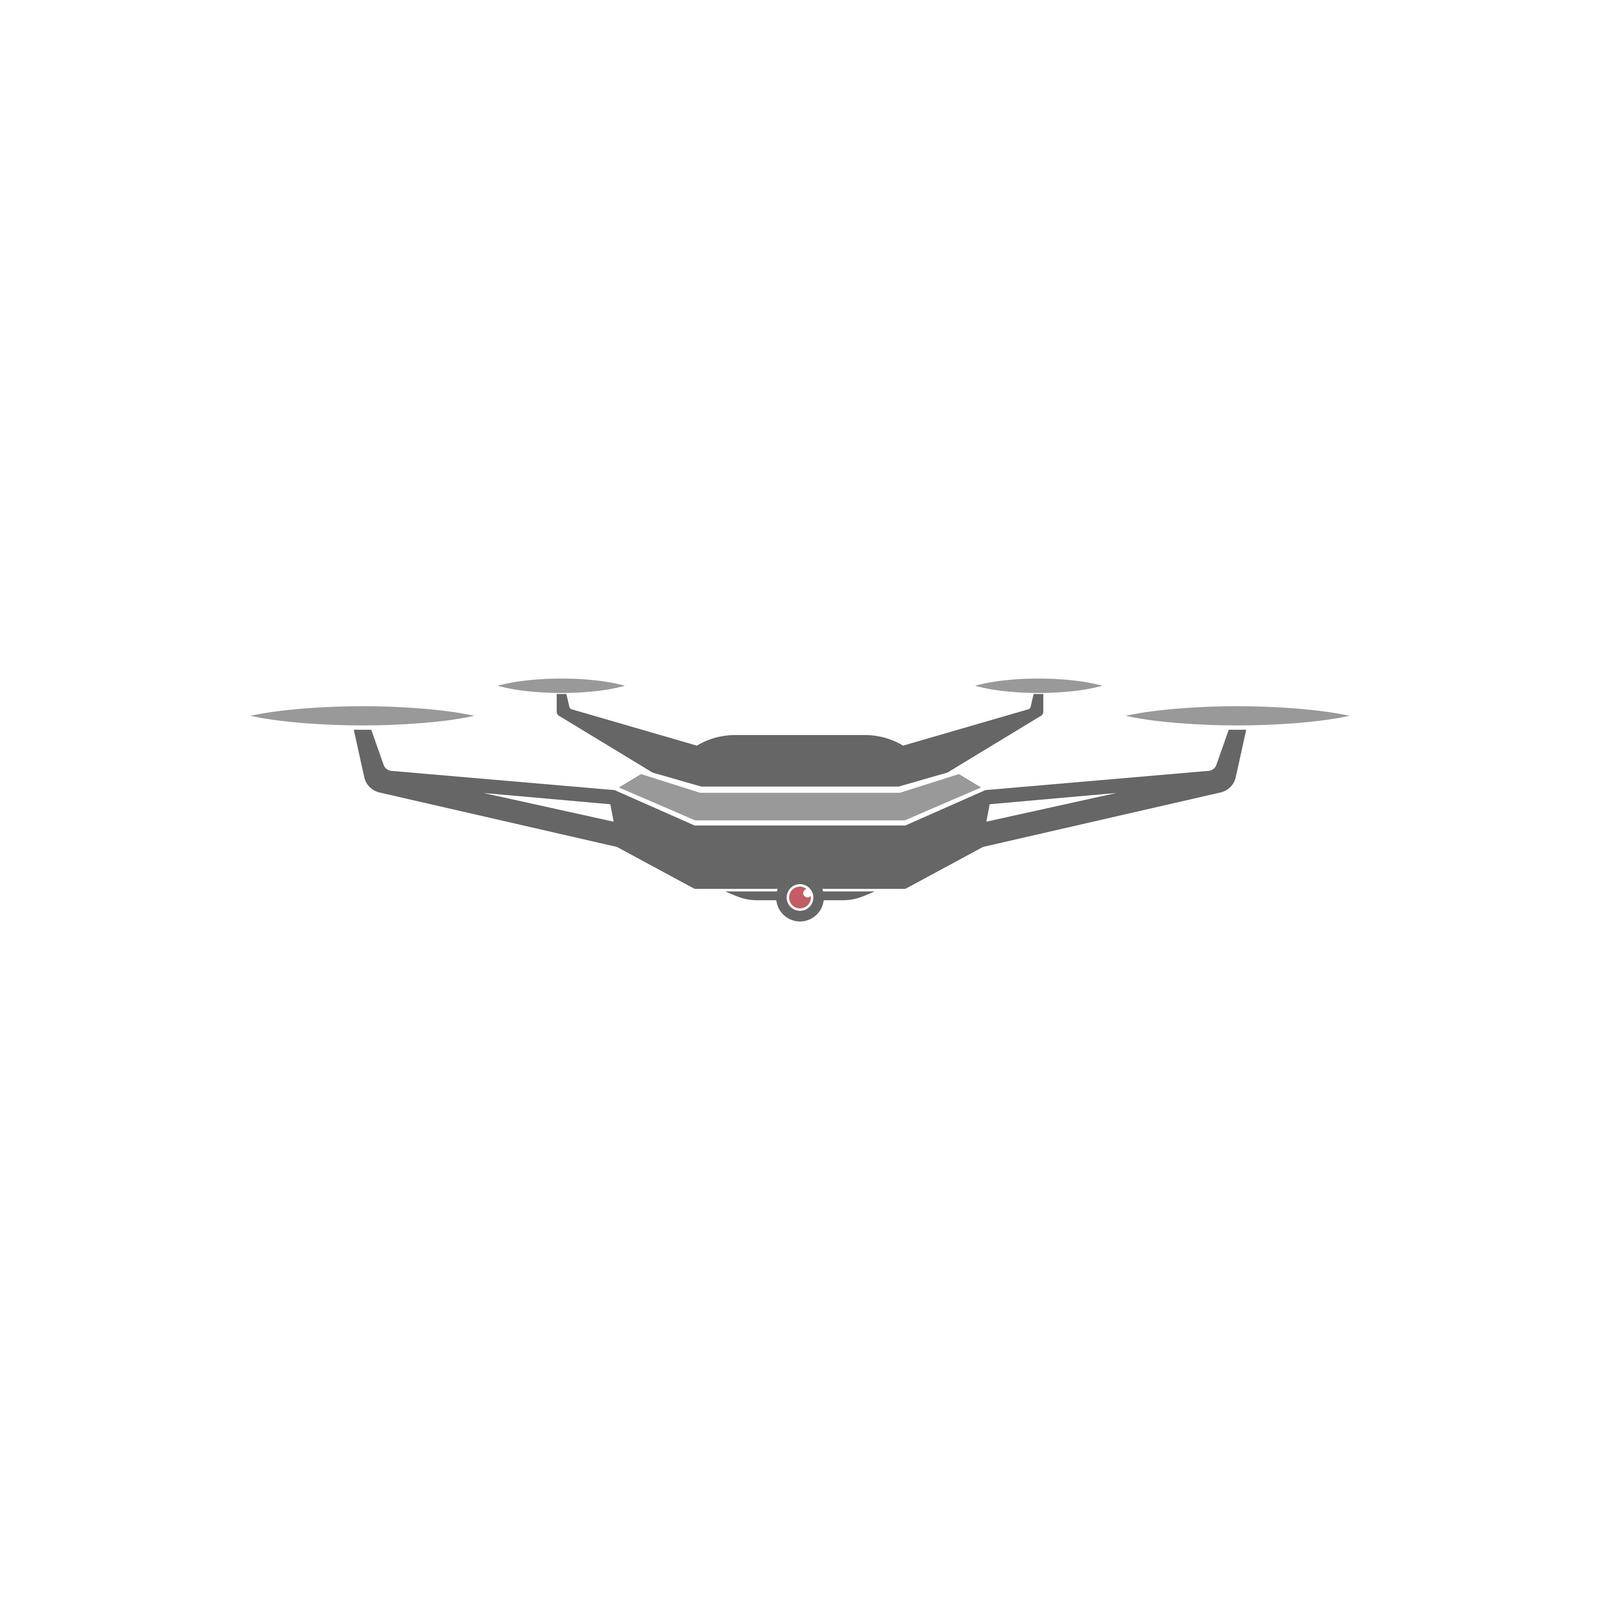 Drone icon logo design illustration vector template